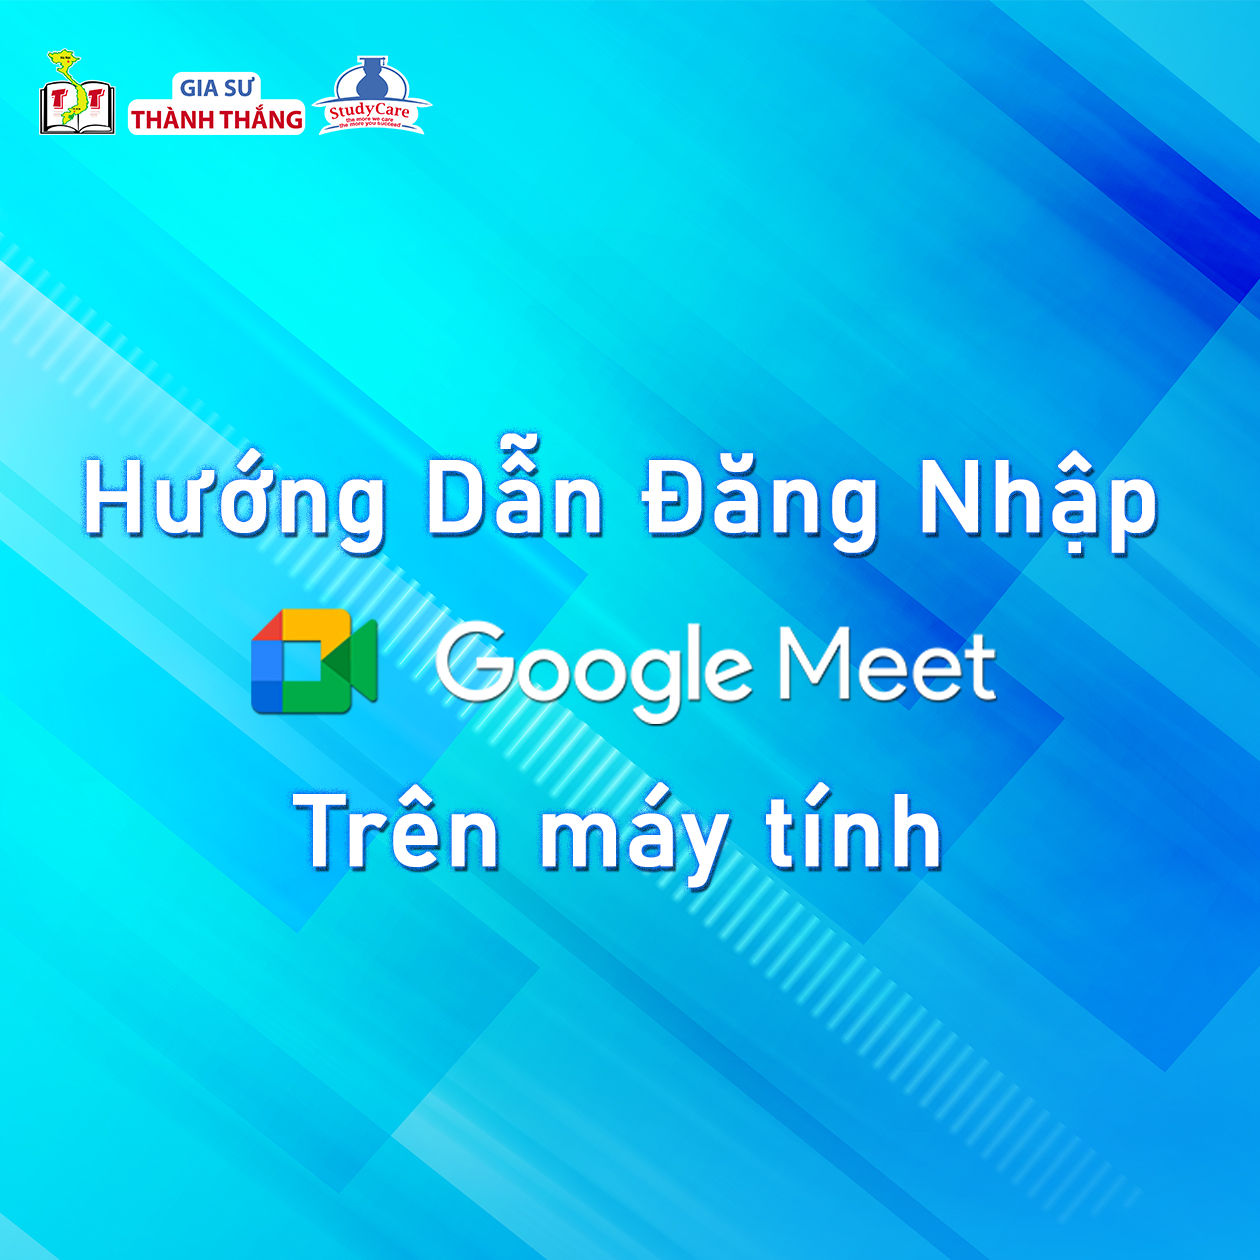 Hướng dẫn sử dụng Google Meet trên điện thoại và máy tính